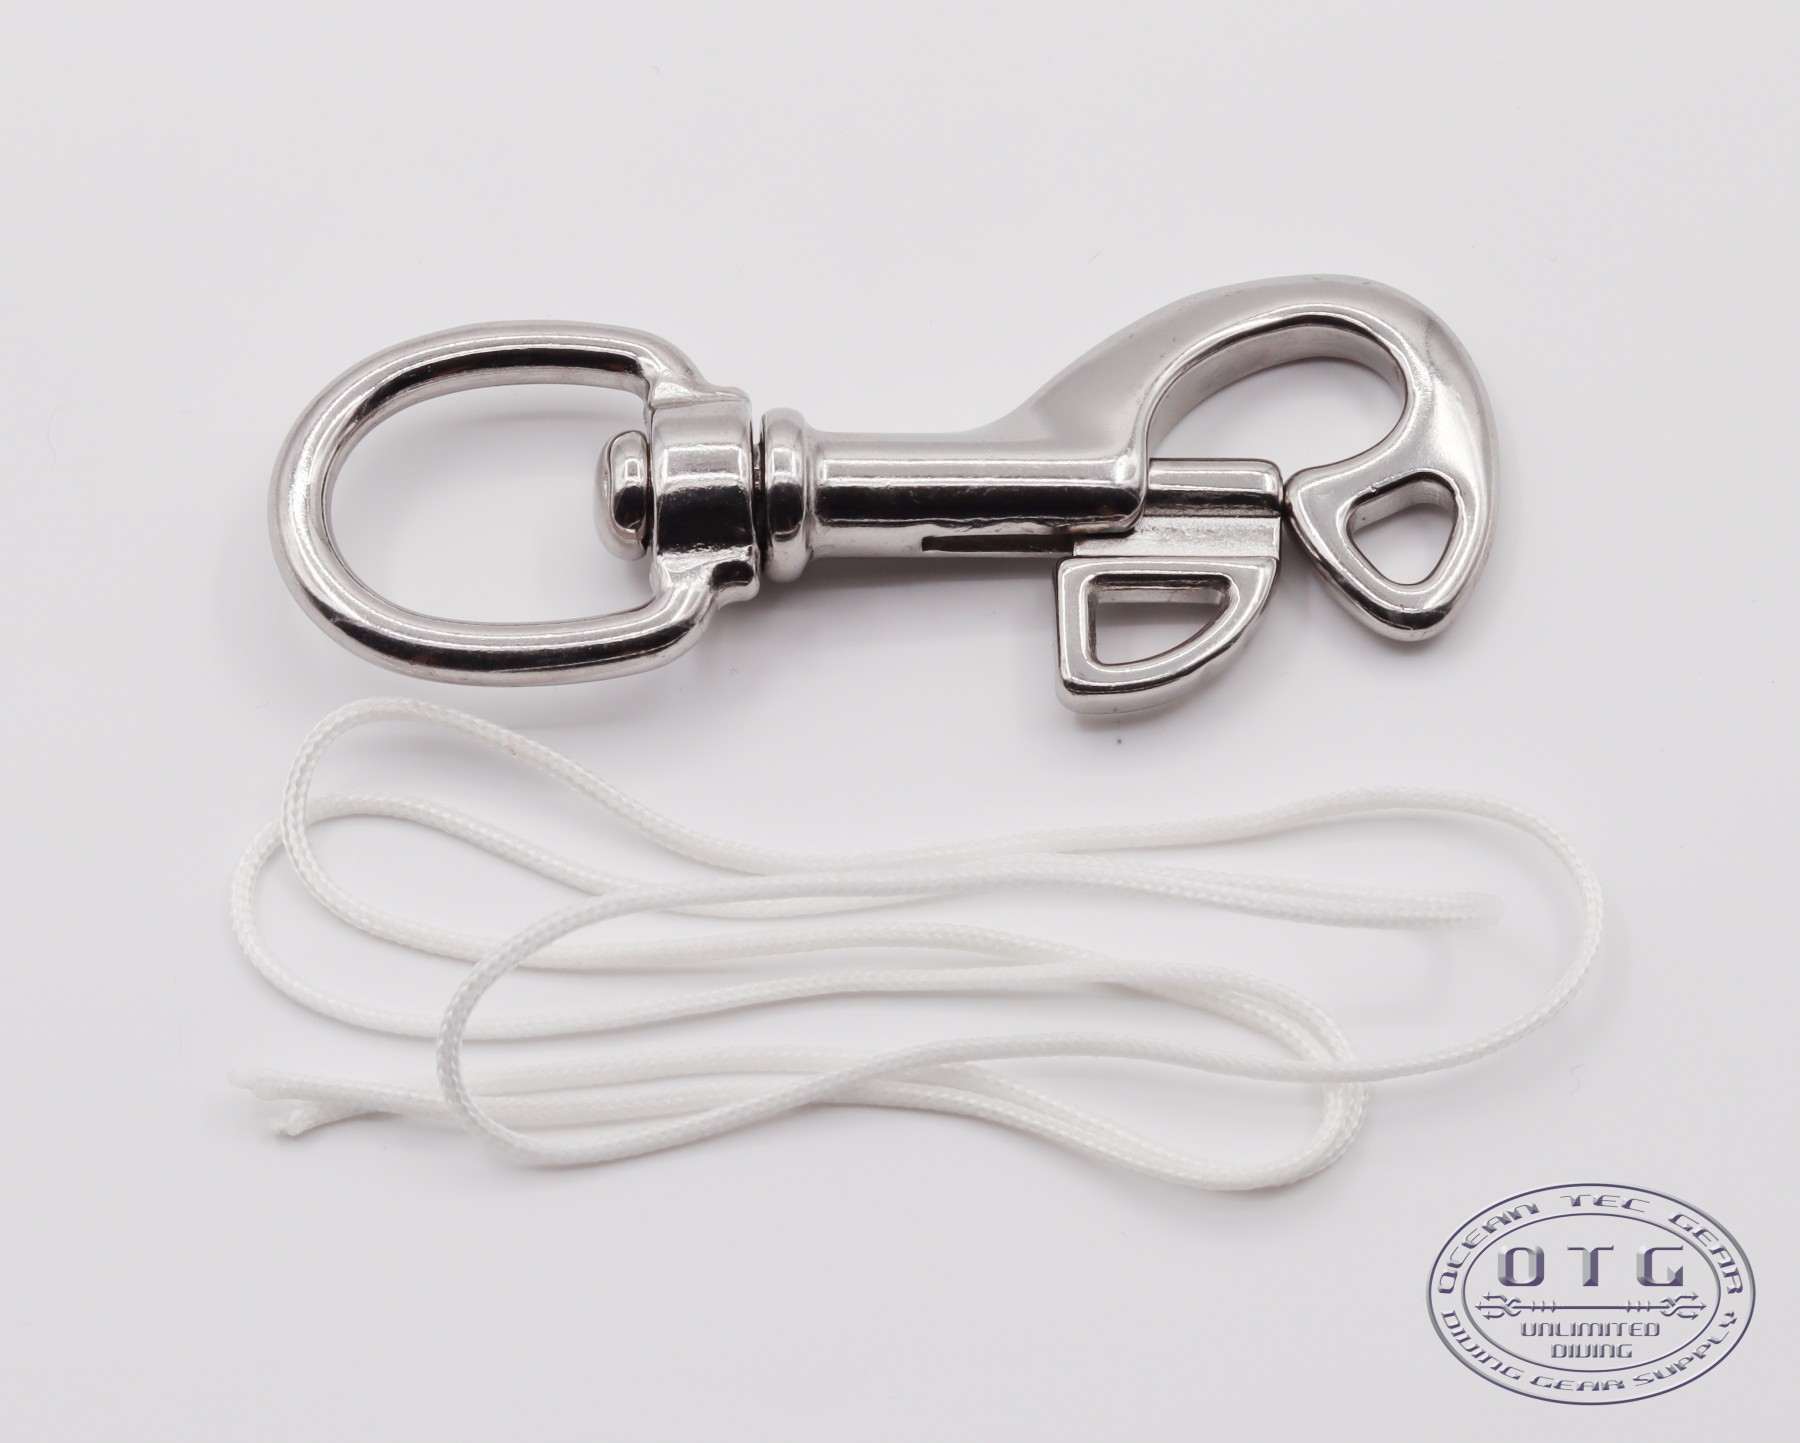 HiTurbo® 316 2-Pack 316 Stainless Steel Swivel Eye Bolt Snap Hook